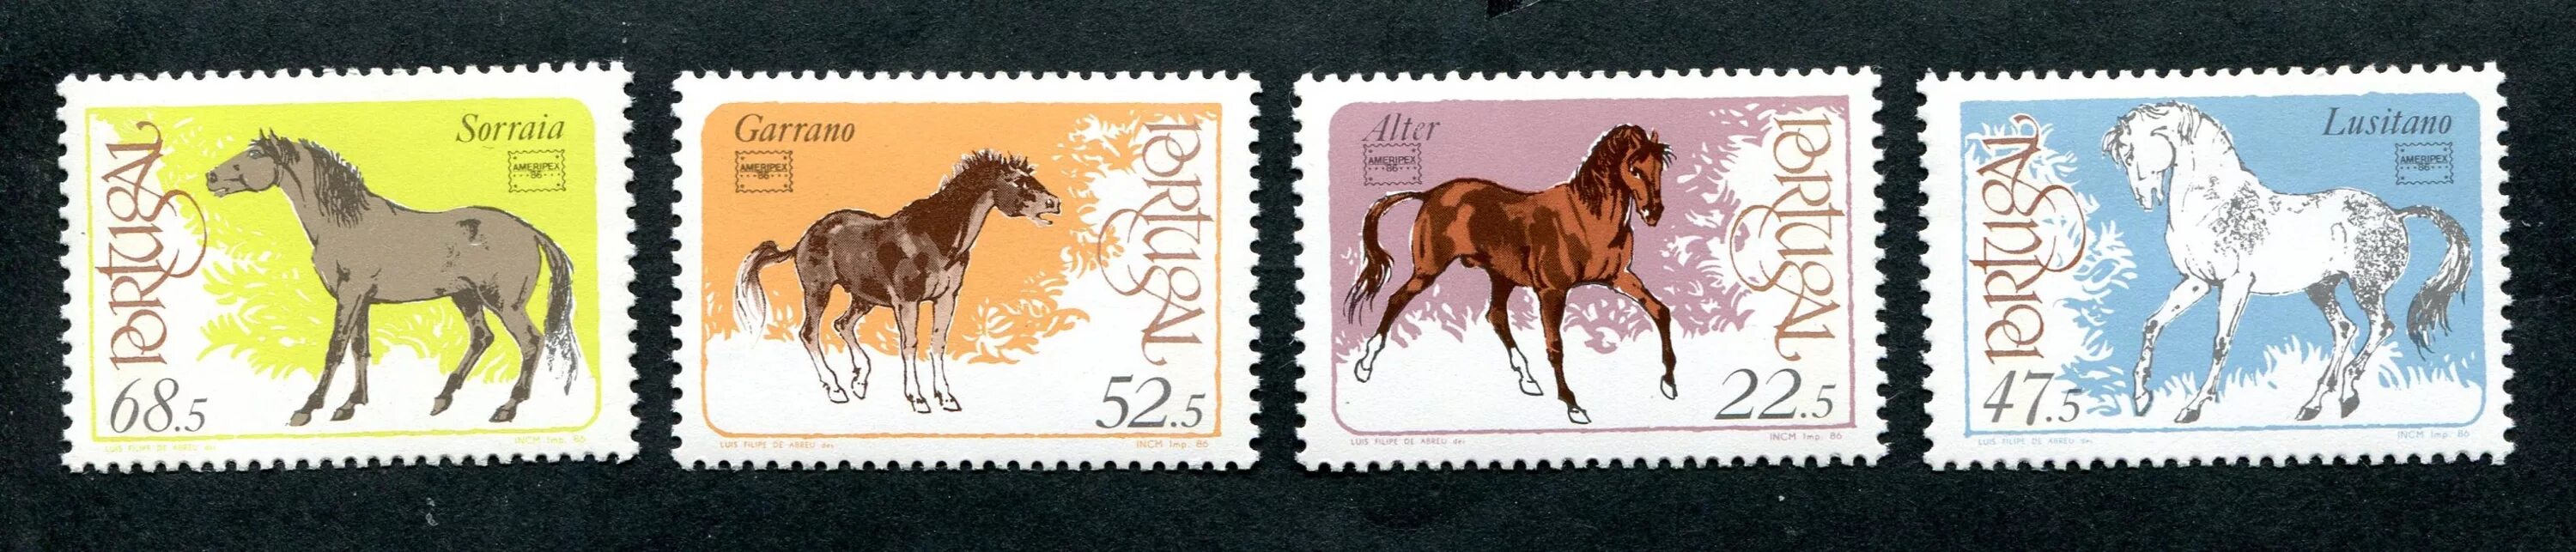 Лошадка марка. Лошади на почтовых марках. Наборы марок с лошадьми. Духи марка с лошадью. Сабвуфер марка с лошадью.